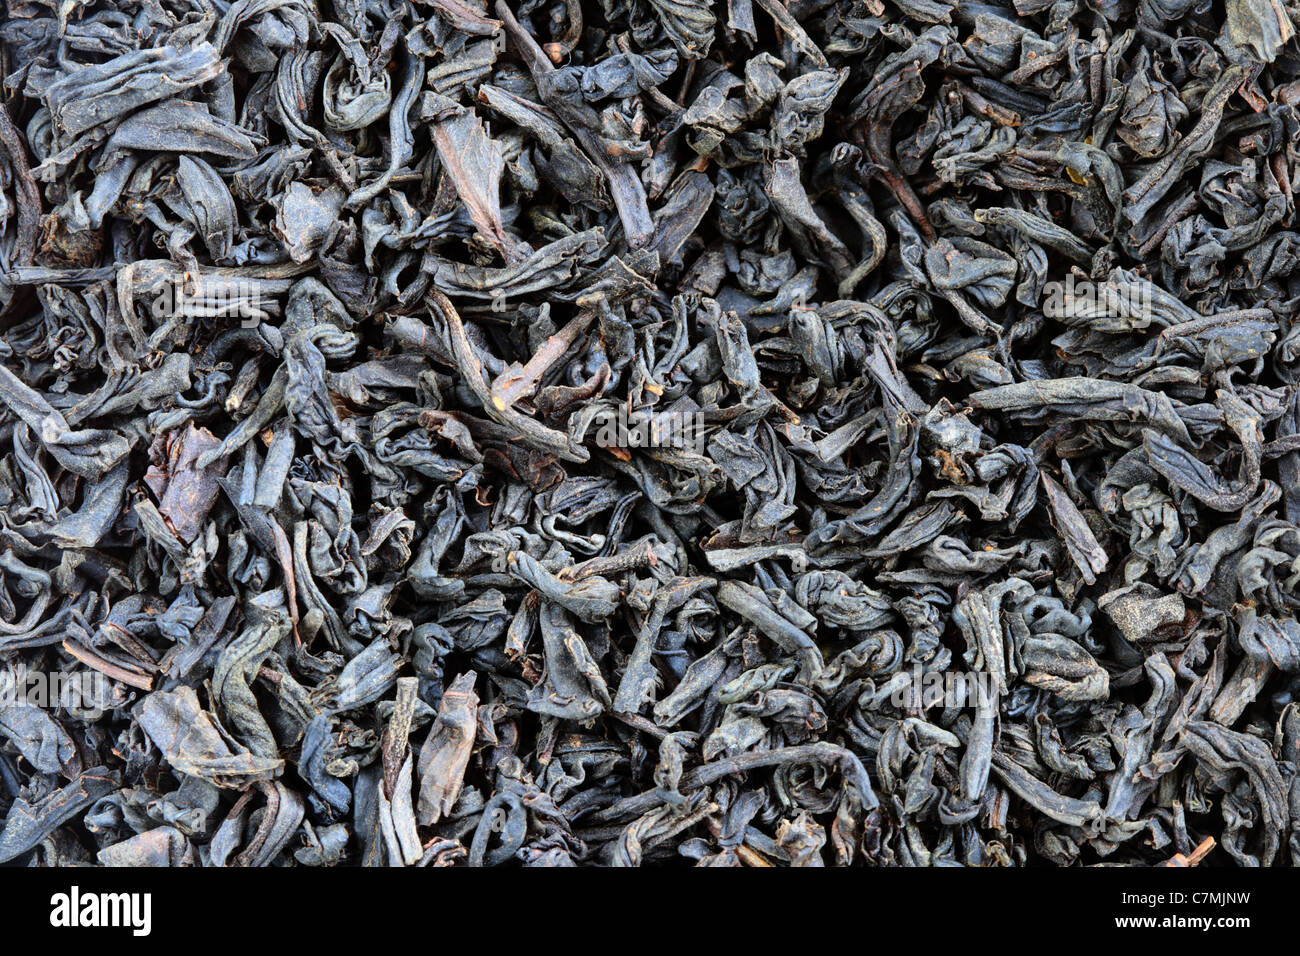 macro image of oolong black tea leaves Stock Photo